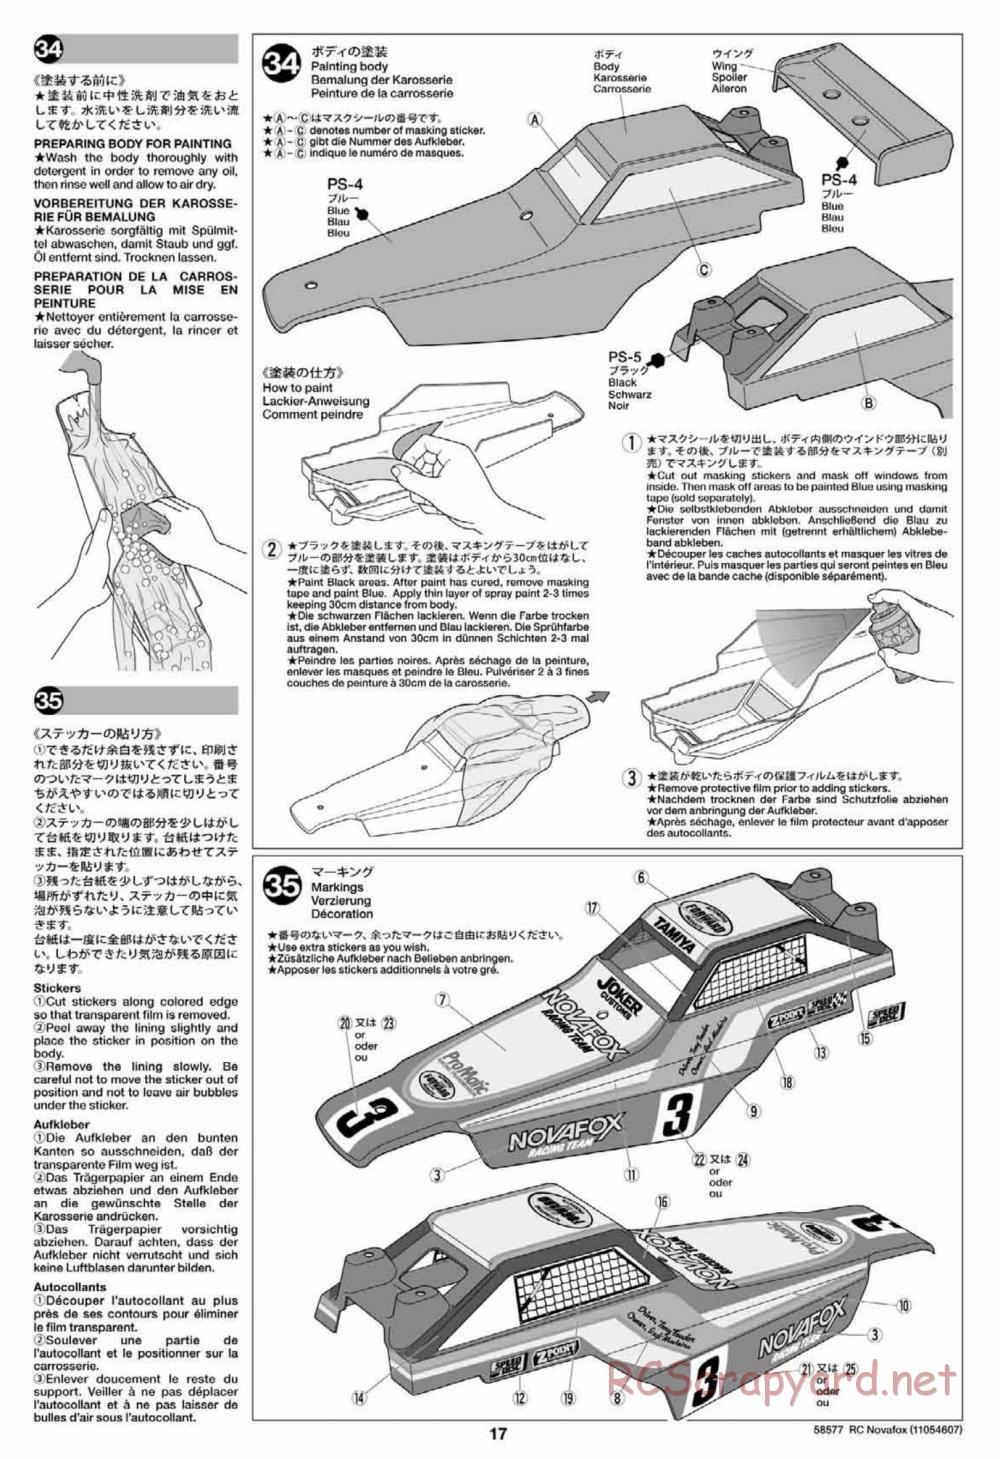 Tamiya - Novafox Chassis - Manual - Page 17